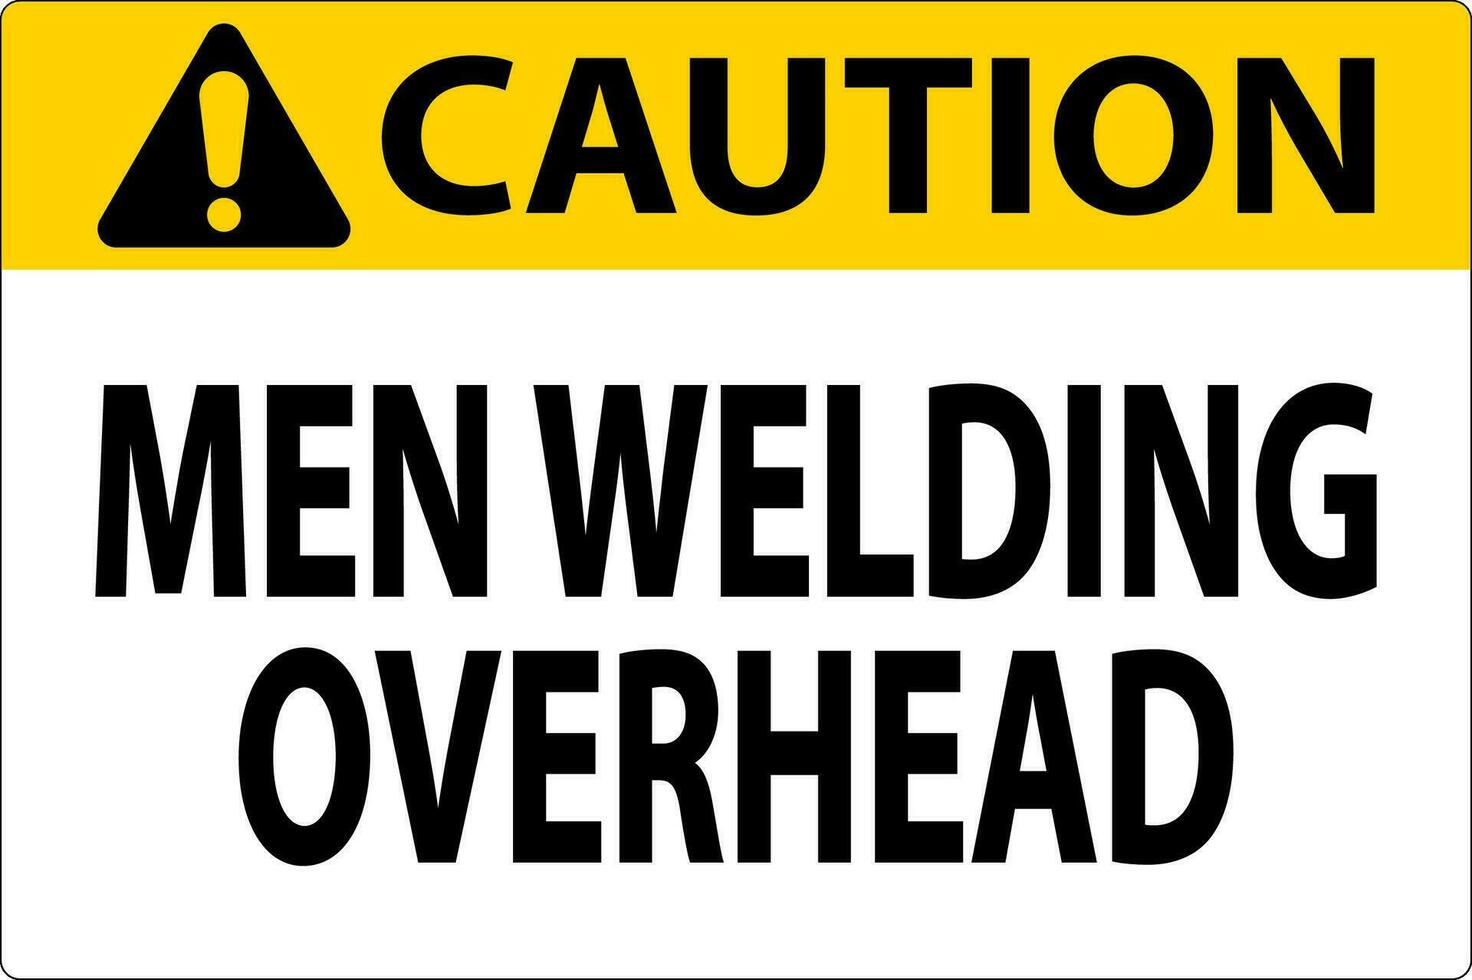 Caution Sign Men Welding Overhead vector